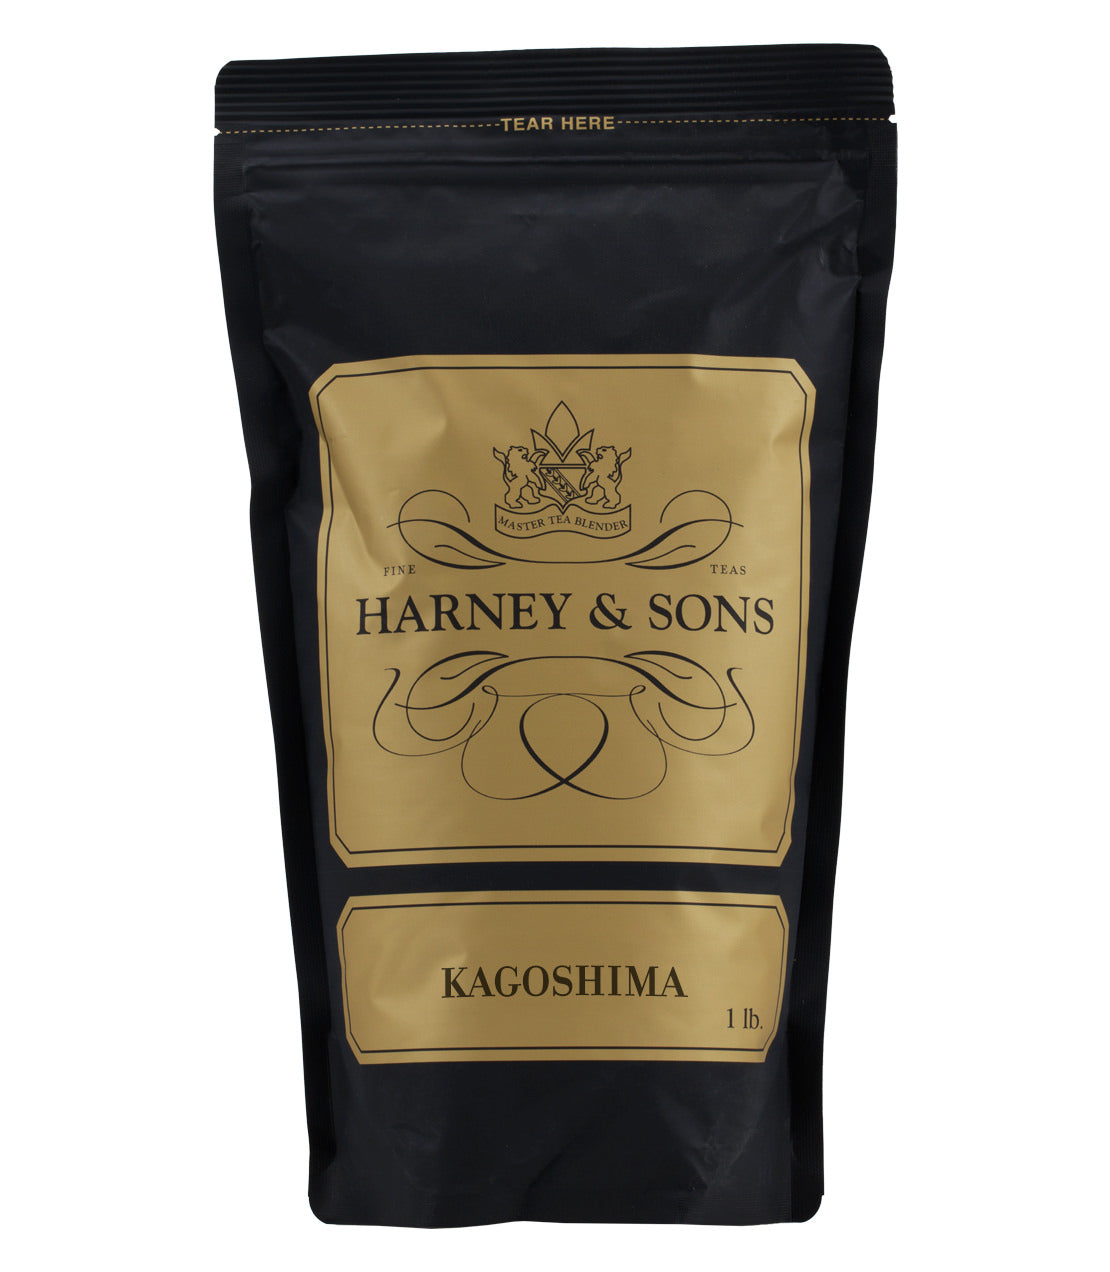 Kagoshima - Loose 1 lb. Bag - Harney & Sons Fine Teas